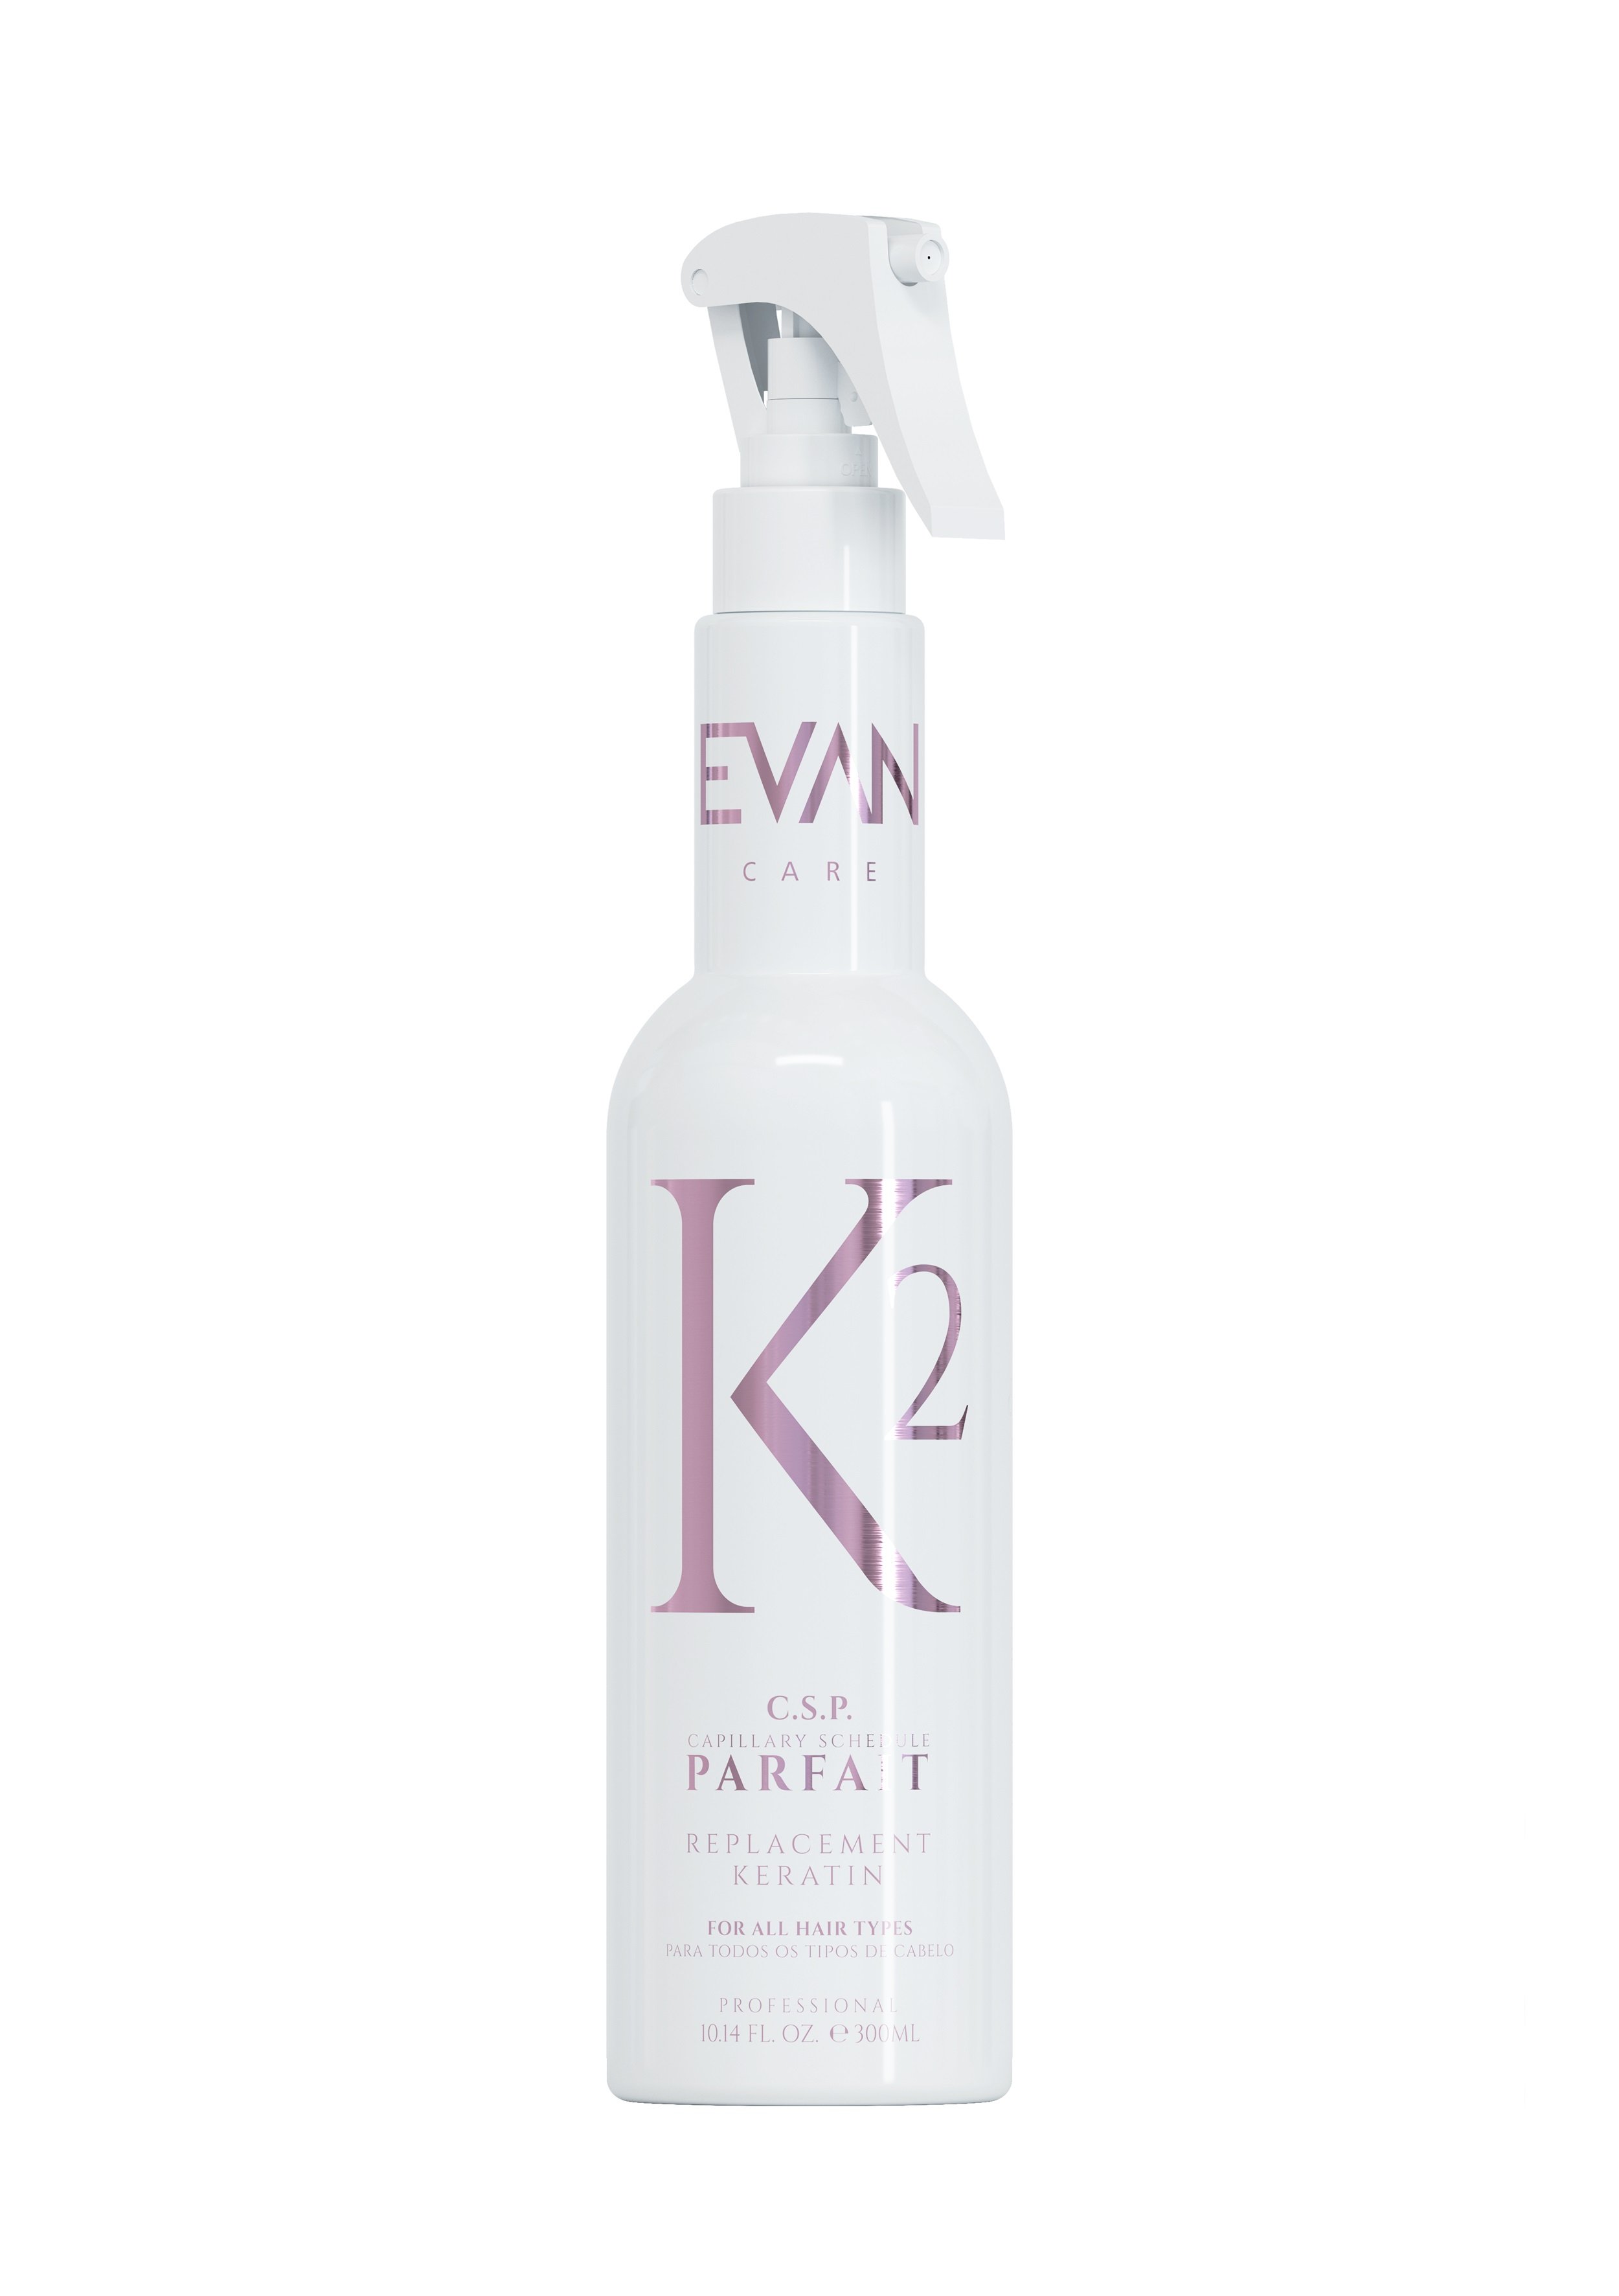 EVAN - Parfait Capillary C.S.P Replacement Keratin 300 ml